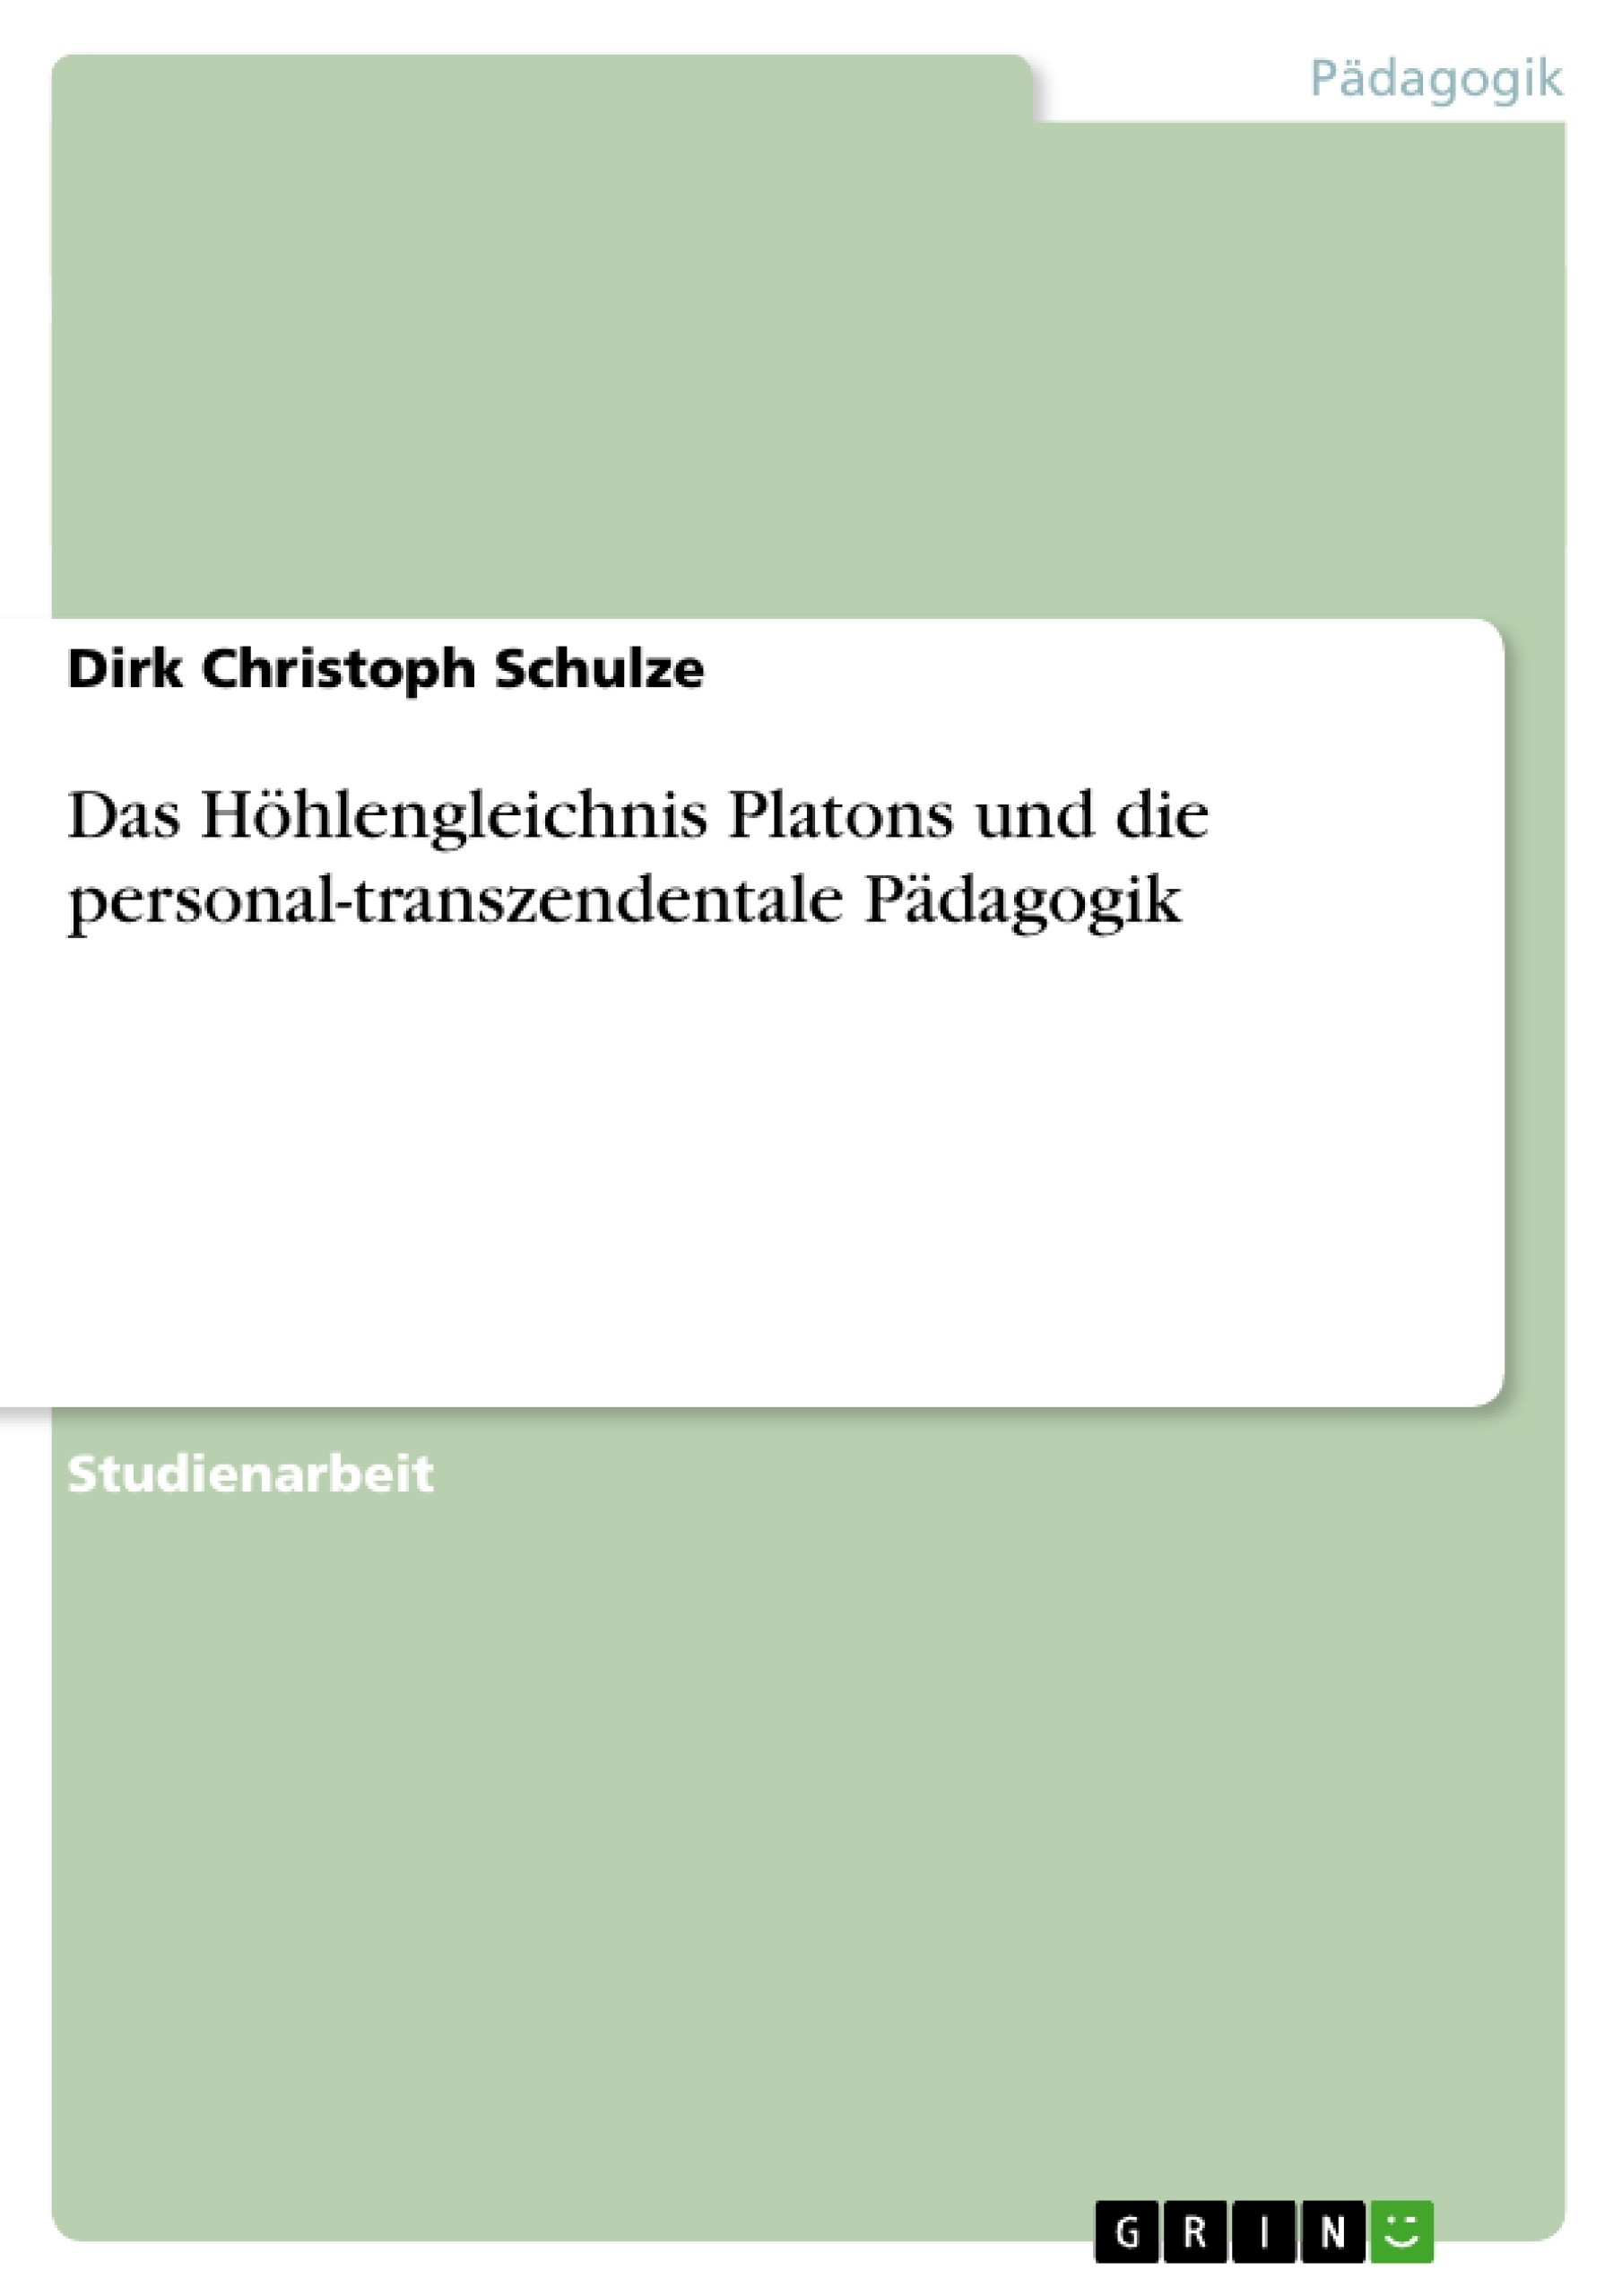 Título: Das Höhlengleichnis Platons und die personal-transzendentale Pädagogik